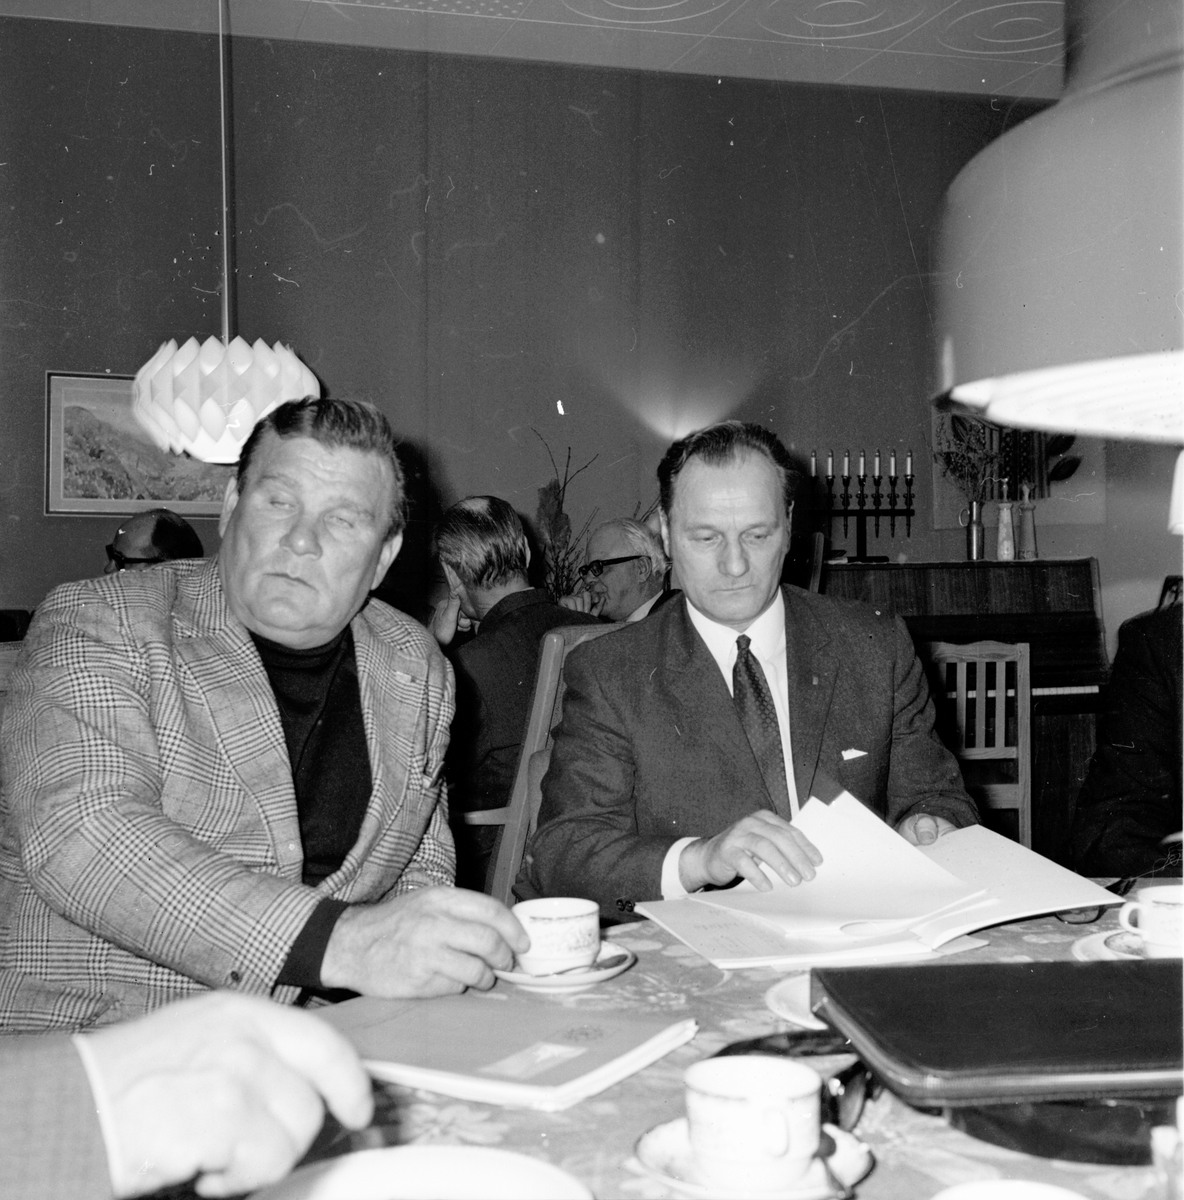 Forum Arbrå,
FP. överlägger om sammanslagning,
April 1972